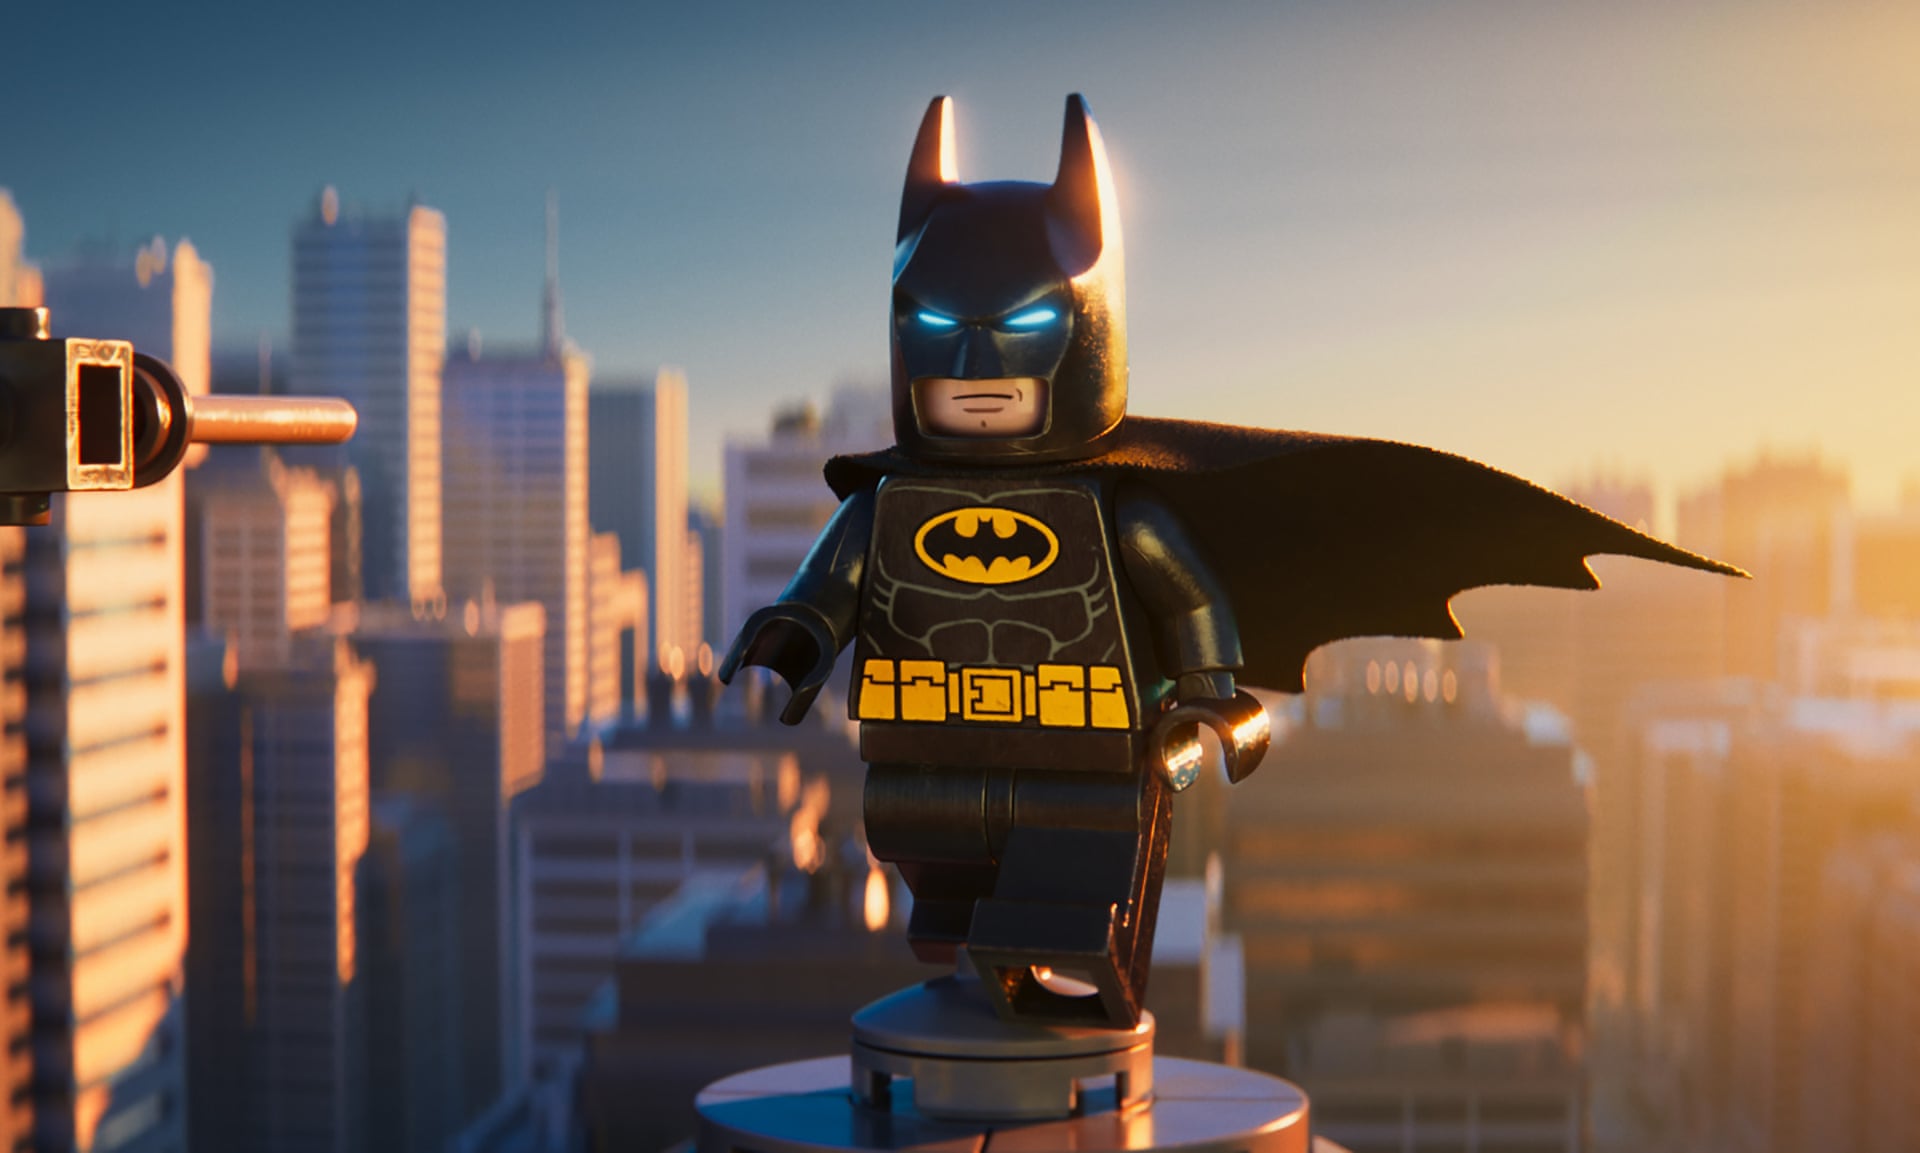 LEGO deixa a Warner e firma novo acordo com a Universal